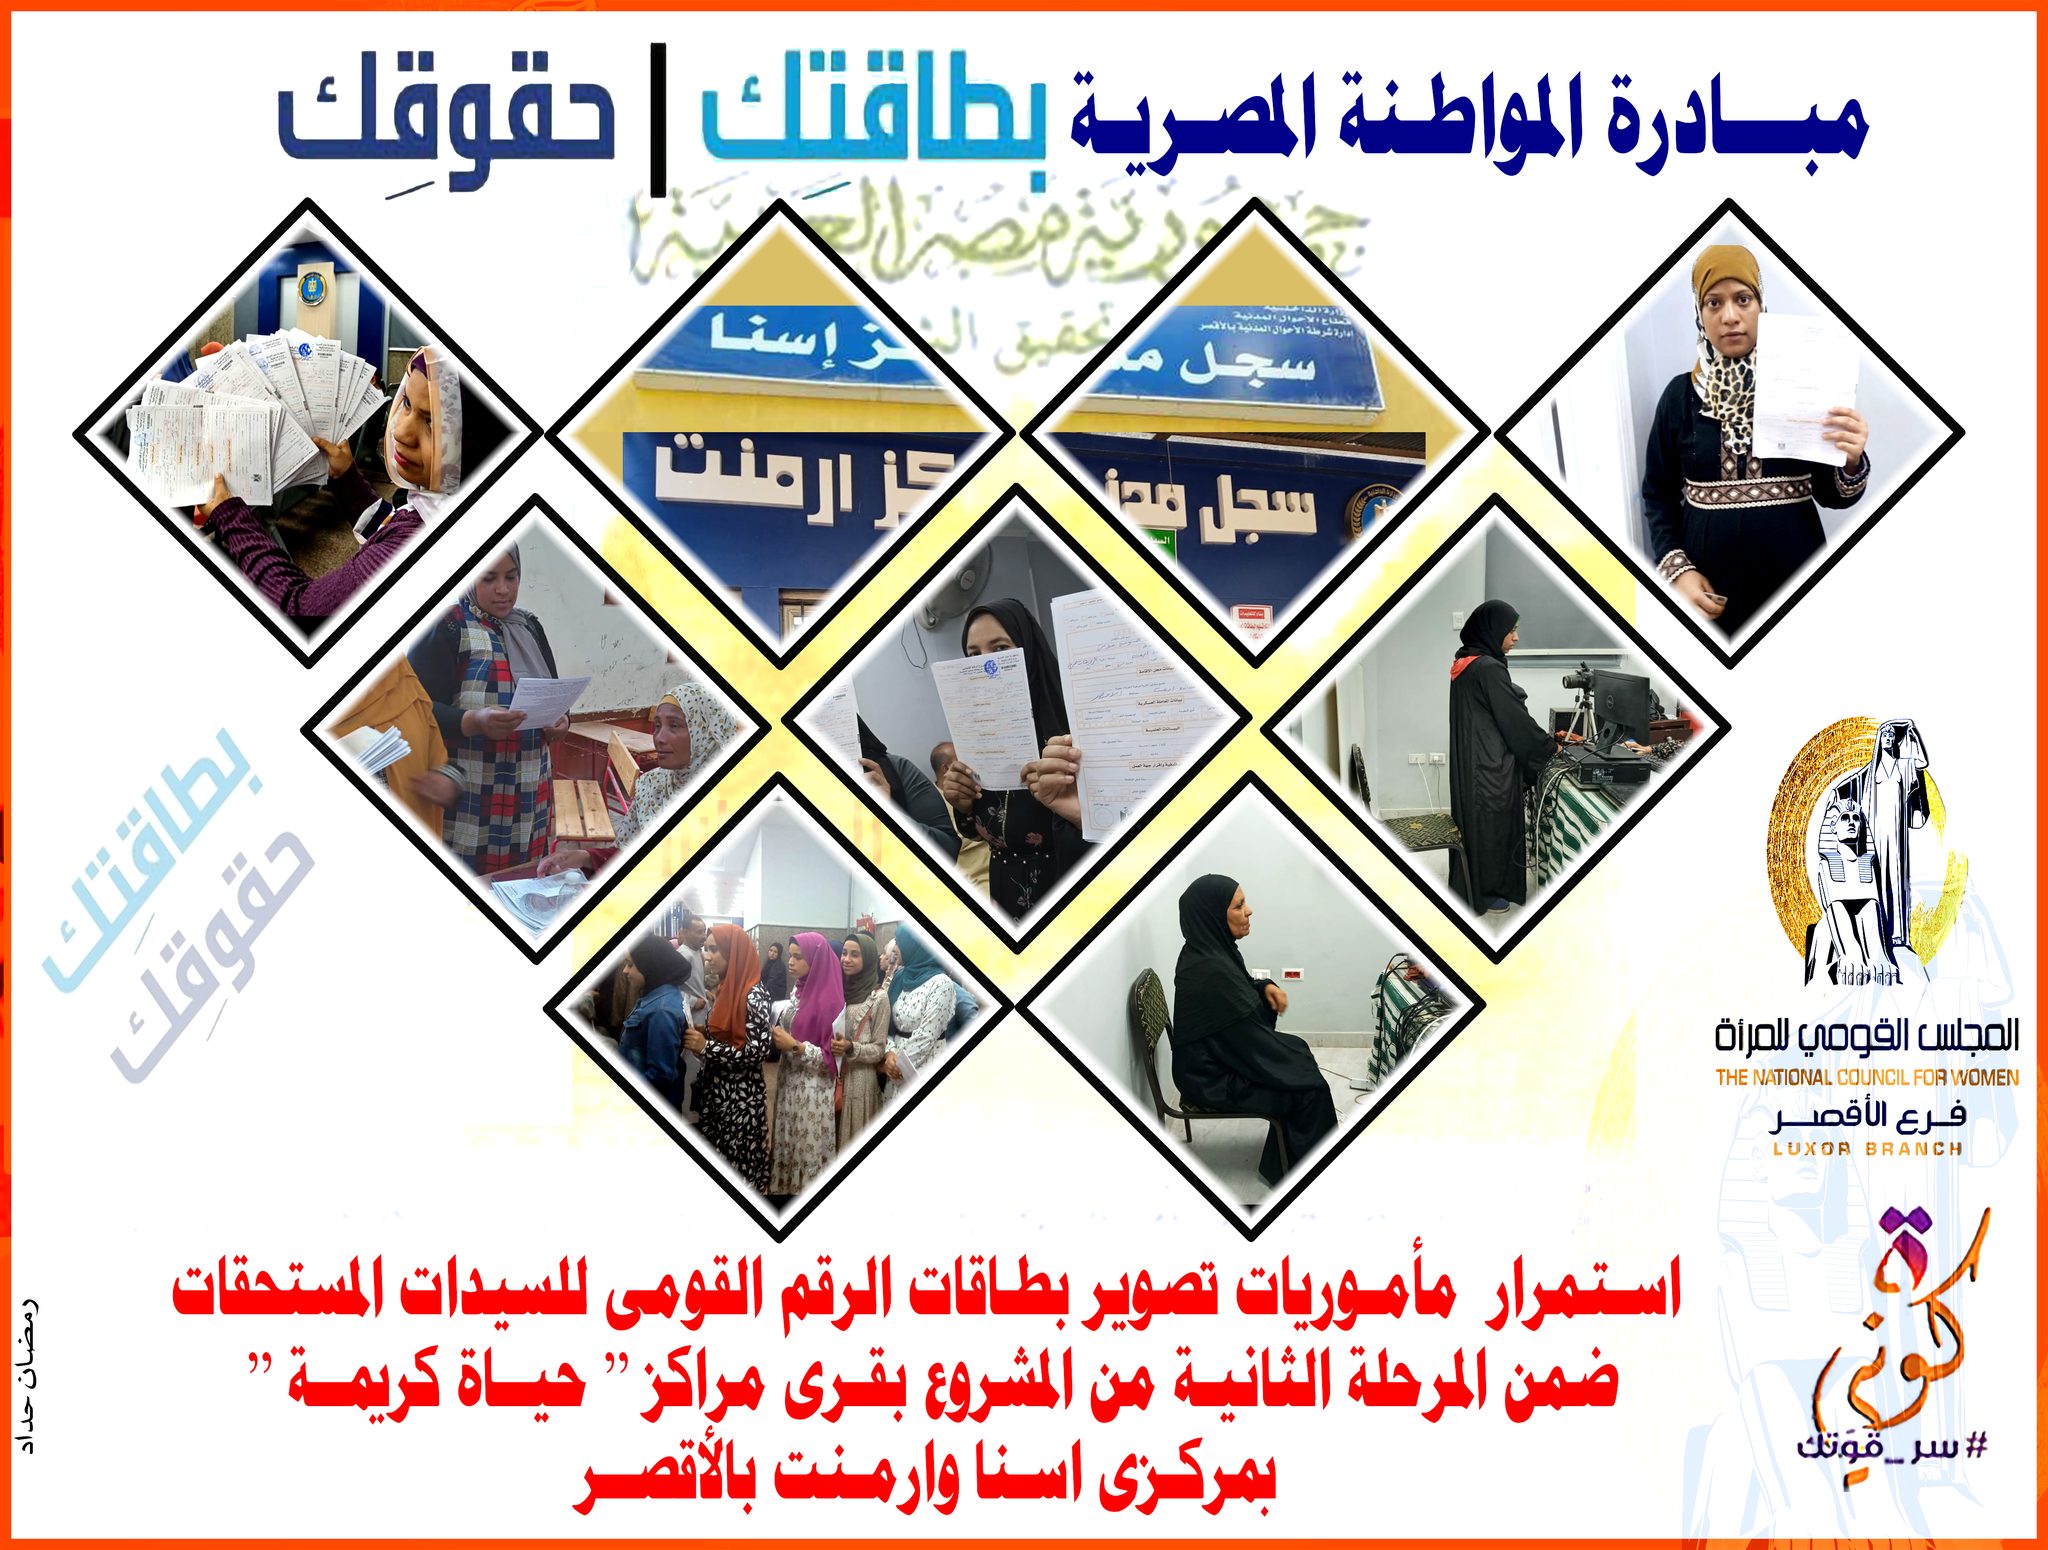 مبادرة المواطنة المصرية بطاقتك حقوقك لدعم سيدات الأقصر